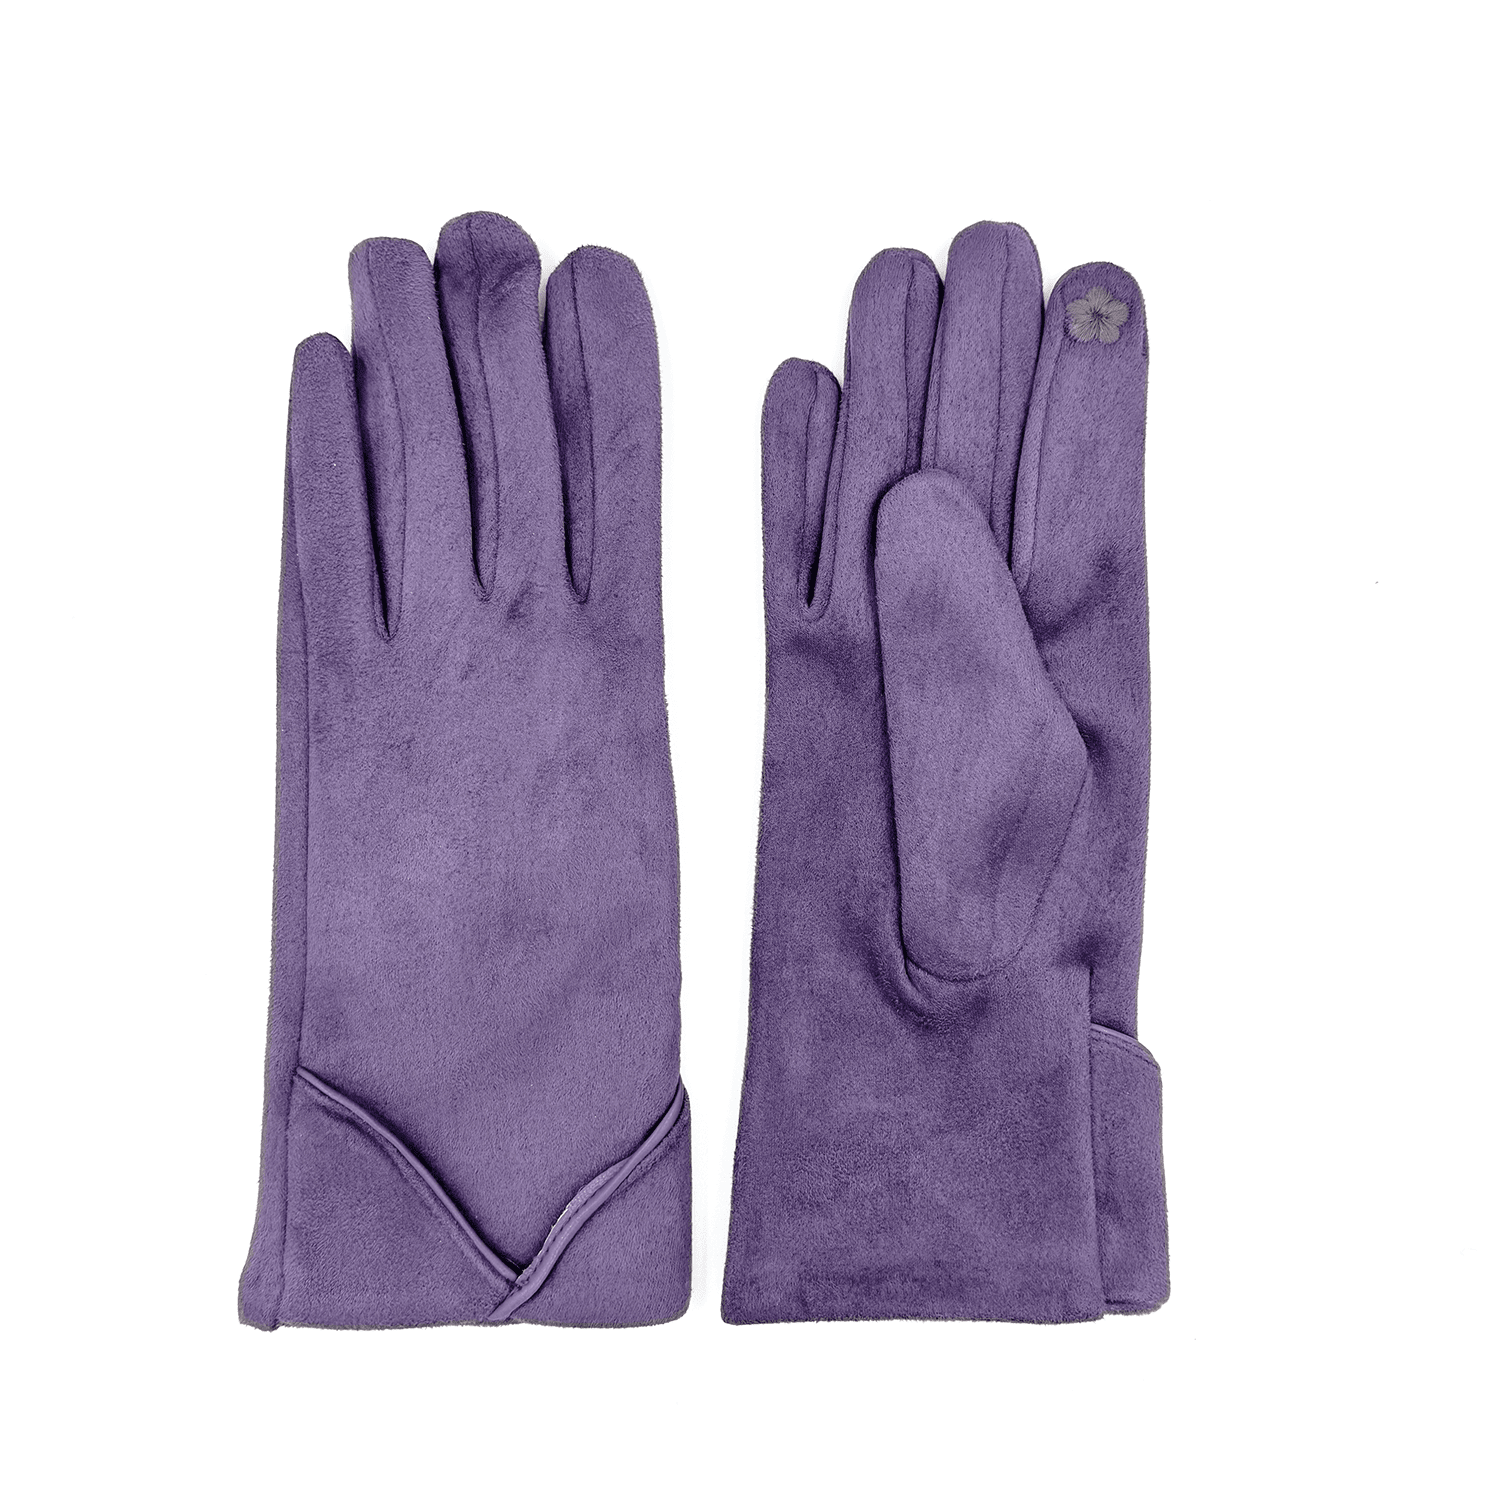 Diana & Co - Дамски меки ръкавици - лилави